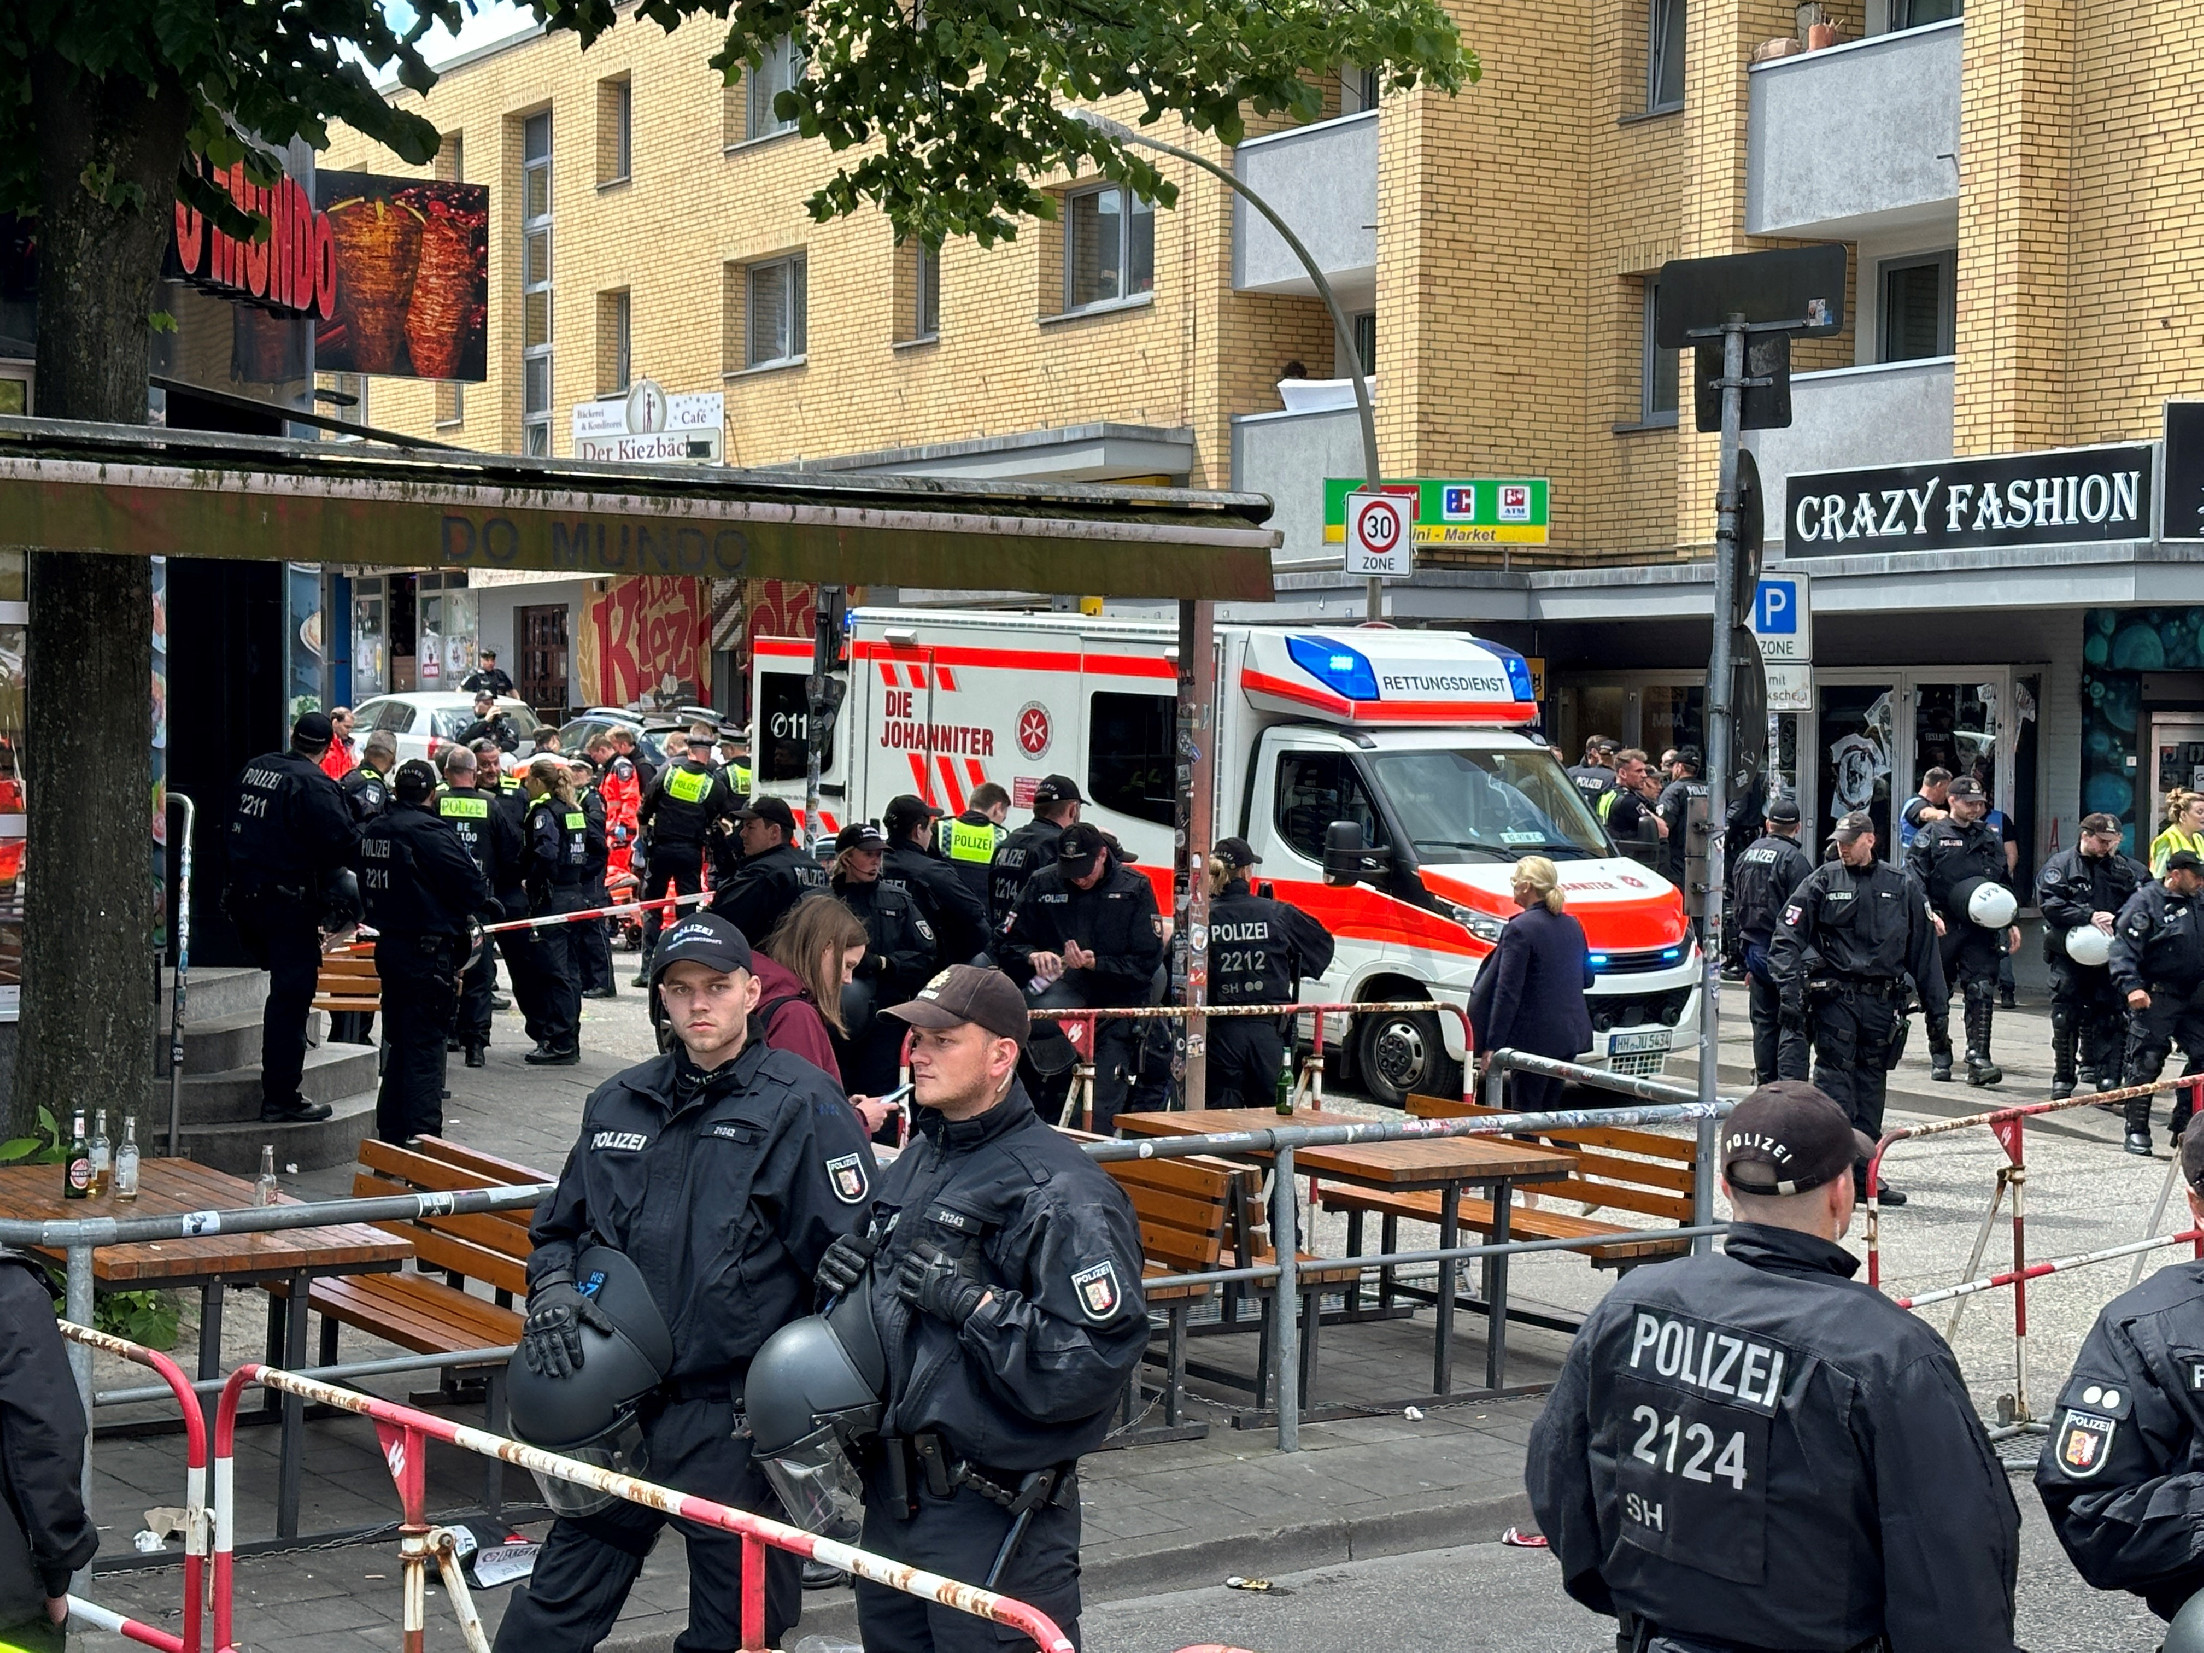 Rendőrök ártalmatlanítottak egy baltás férfit Hamburgban